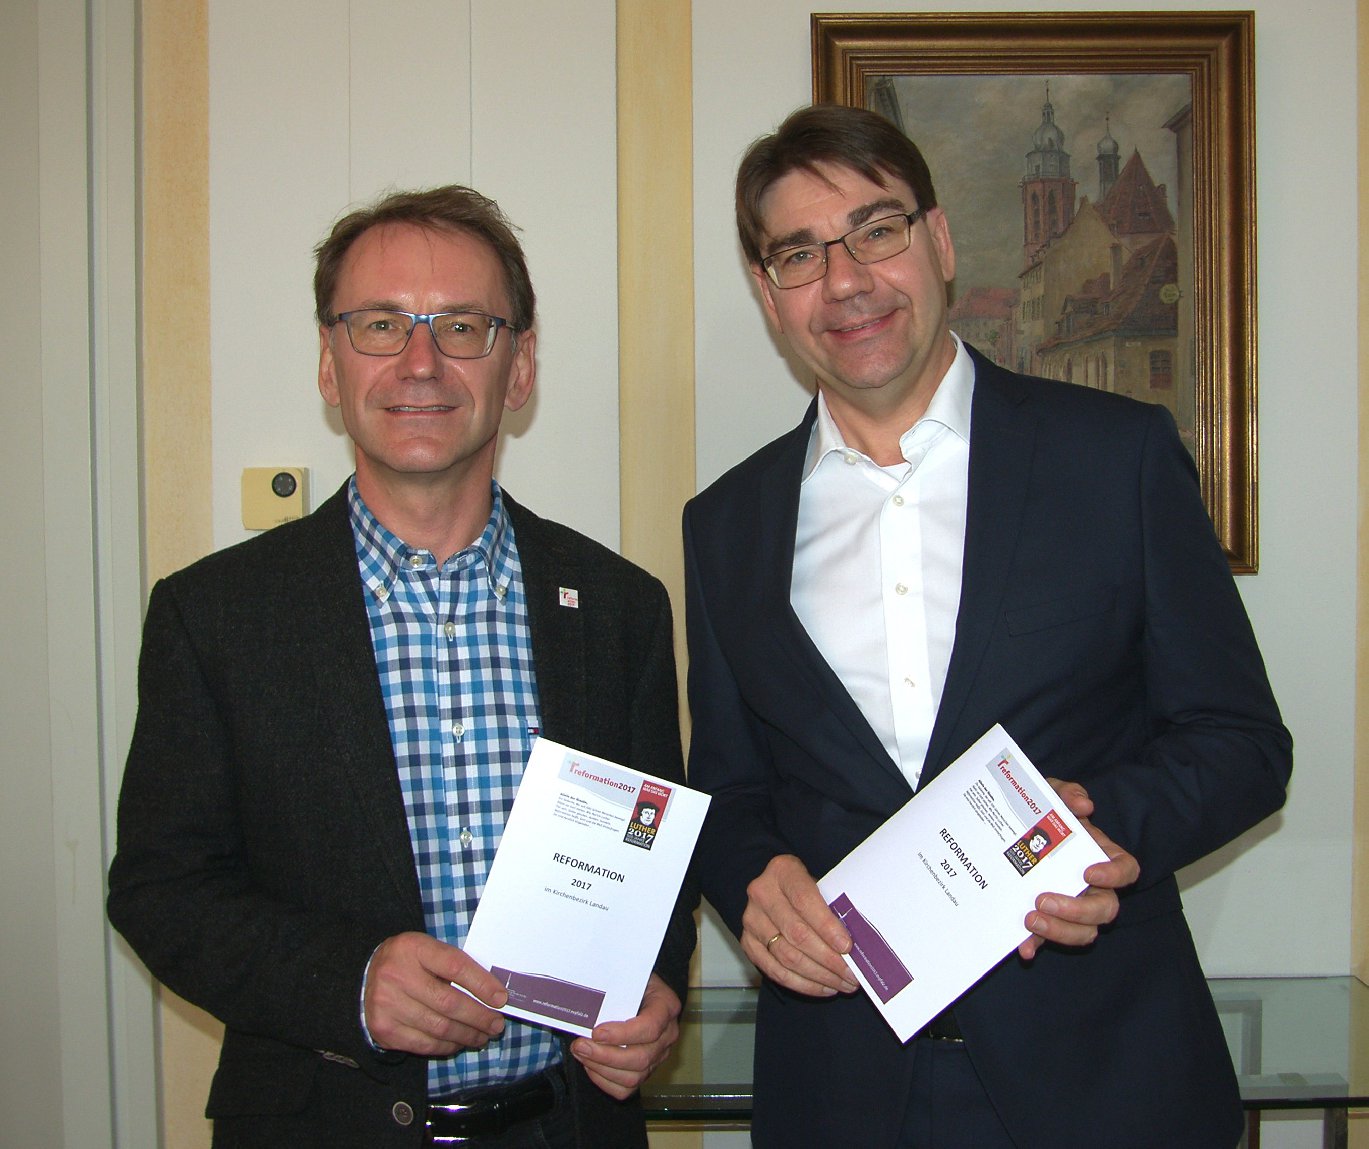 Dekan Janke (links) und OB Hirsch stellten das Programm zum Reformationsjubiläum vor. Foto: Pfalz-Express/Ahme